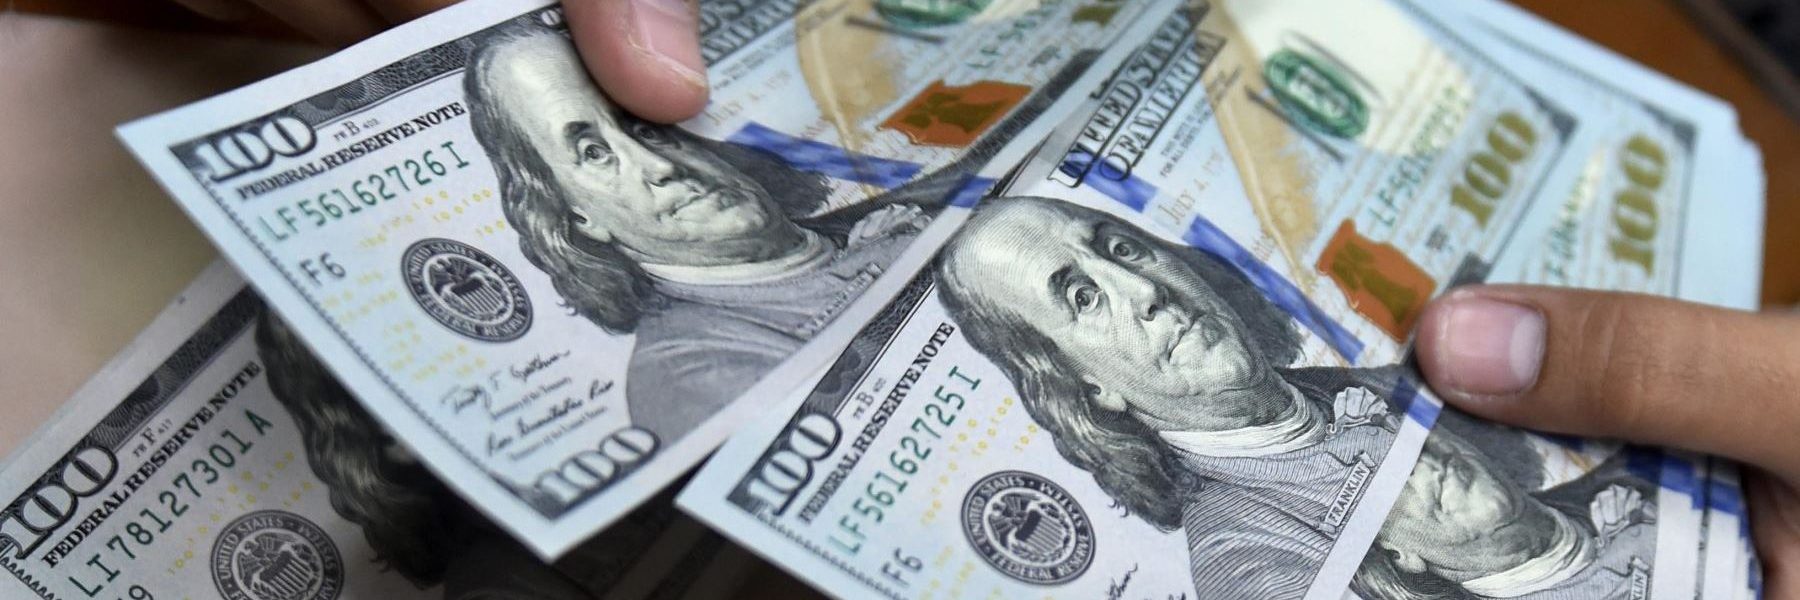 10 claves para entender qué pasa con el dólar en Venezuela